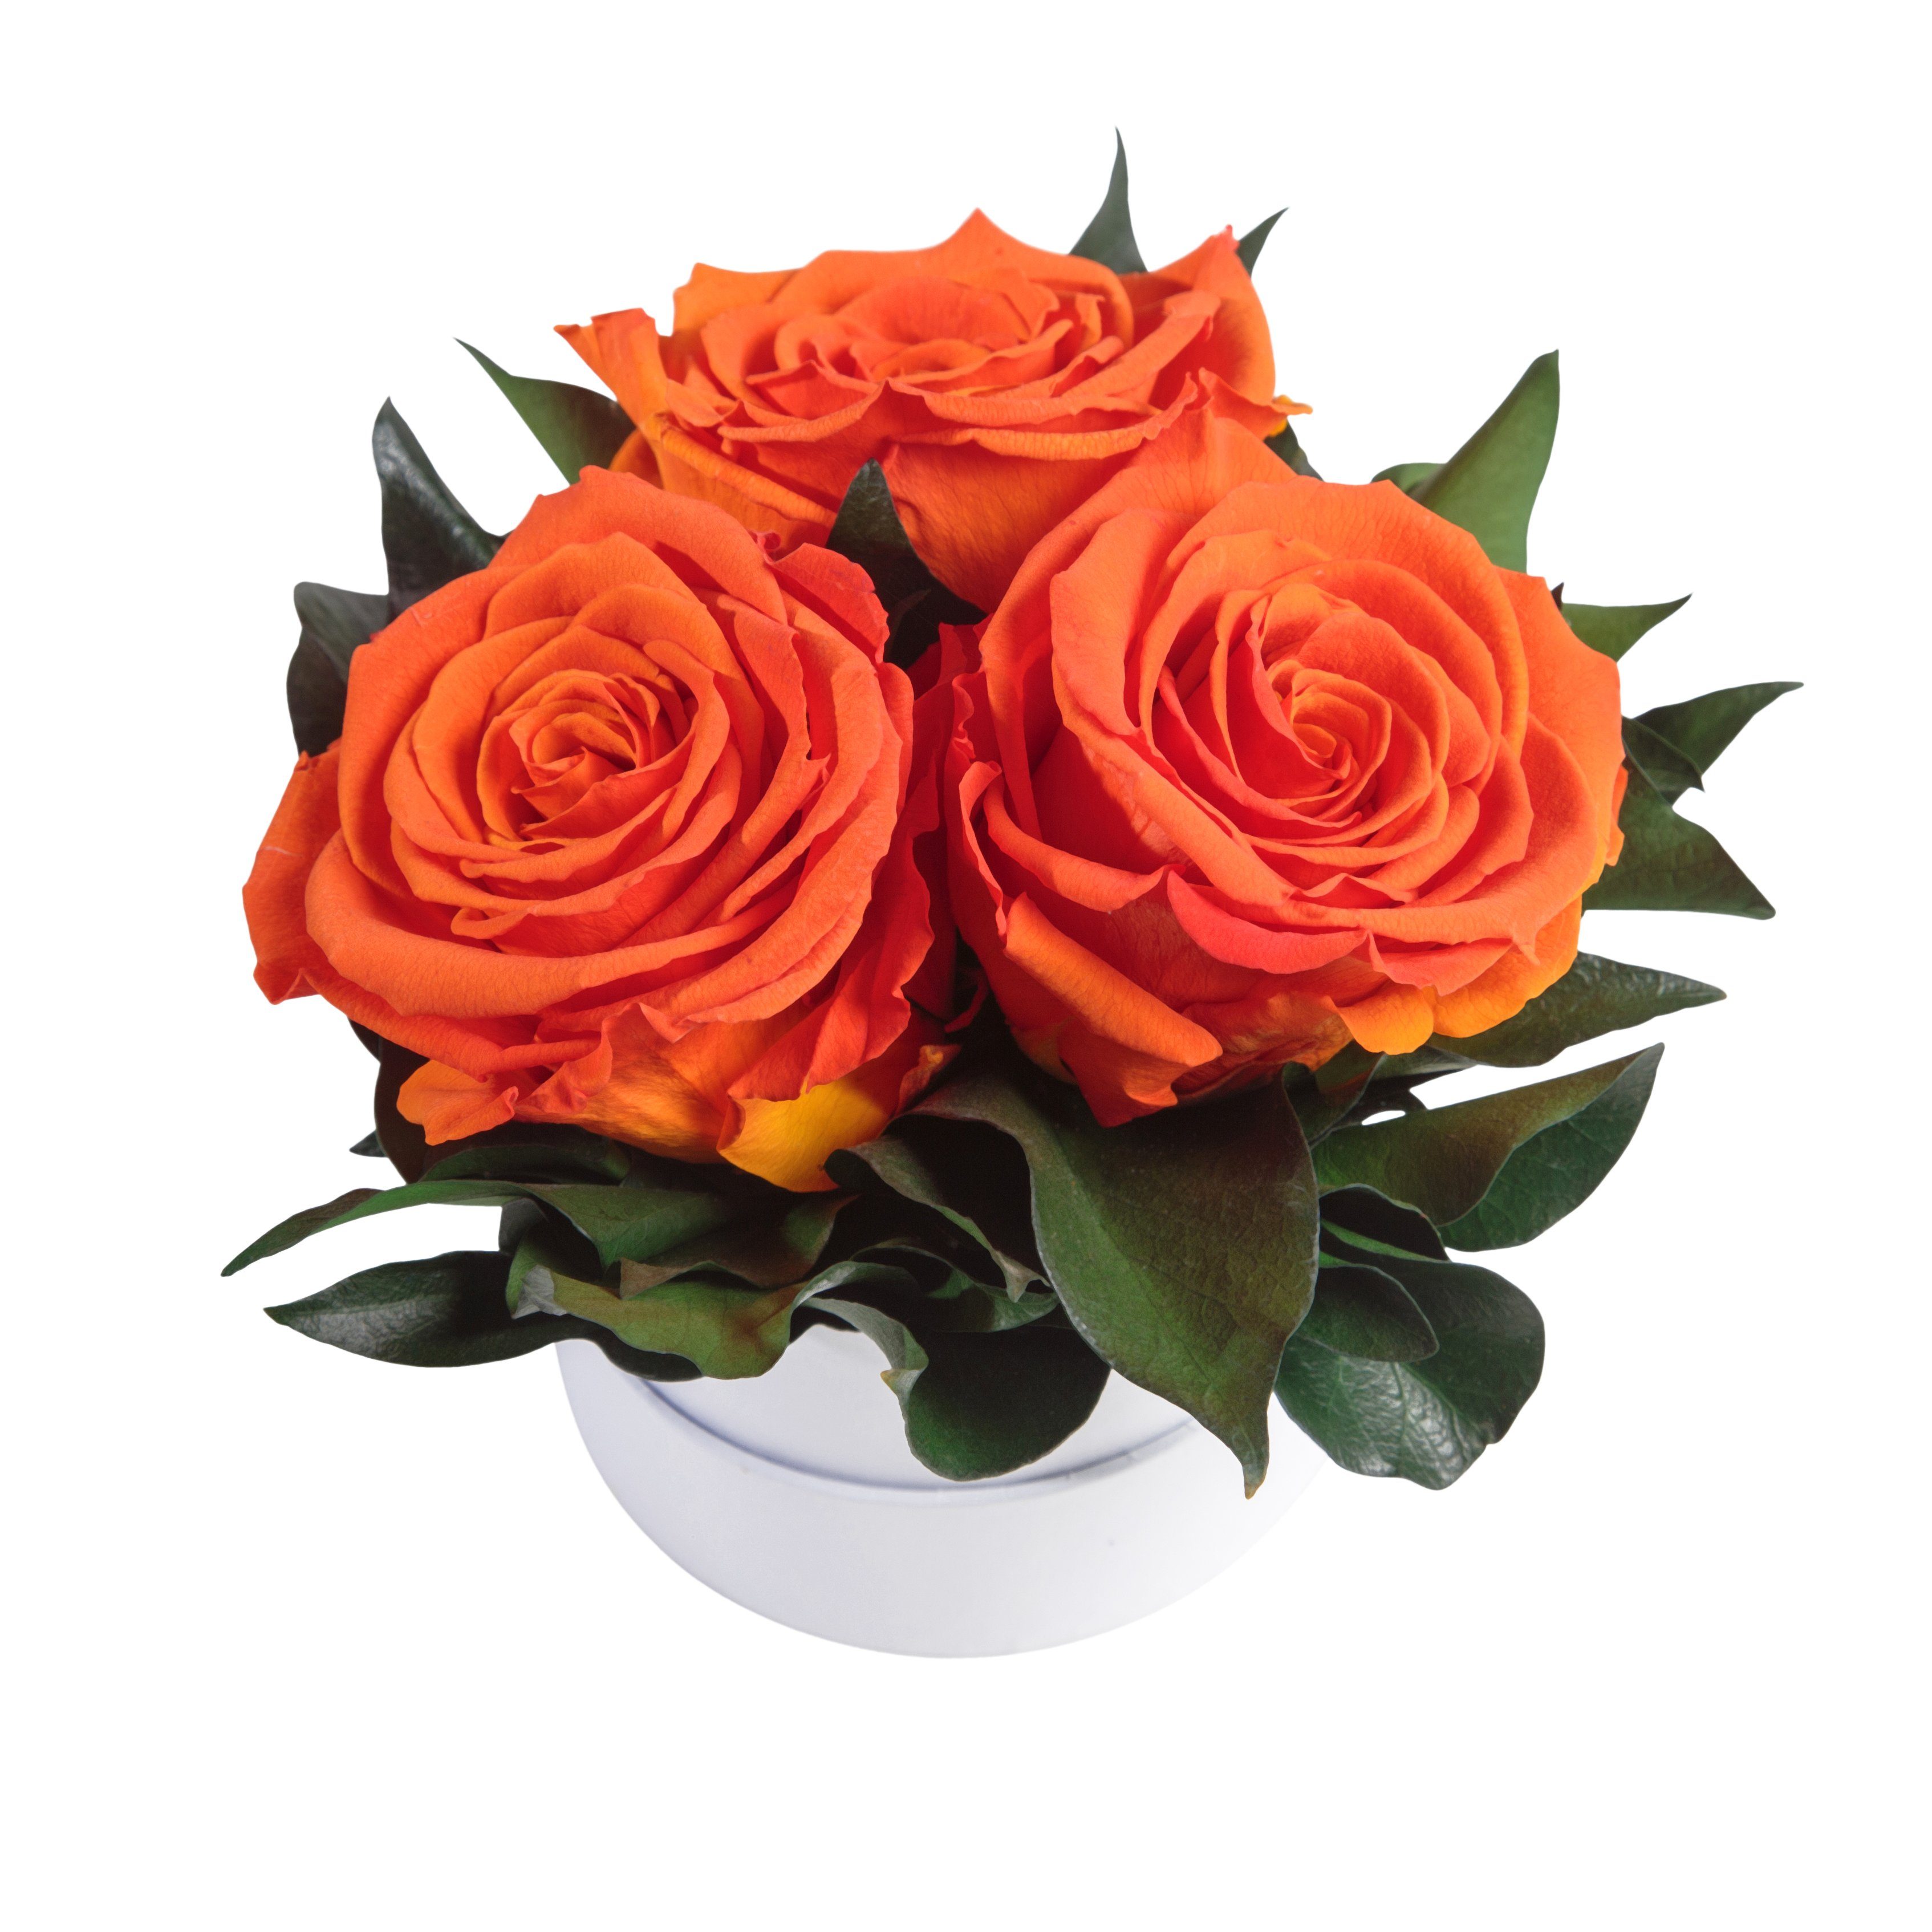 Infinity echte Geschenk SCHULZ Kunstblume weiß Heidelberg, rund 10 Rose, Höhe Orange cm, konserviert für Rosen Rosenbox ROSEMARIE Rosen 3 Sie